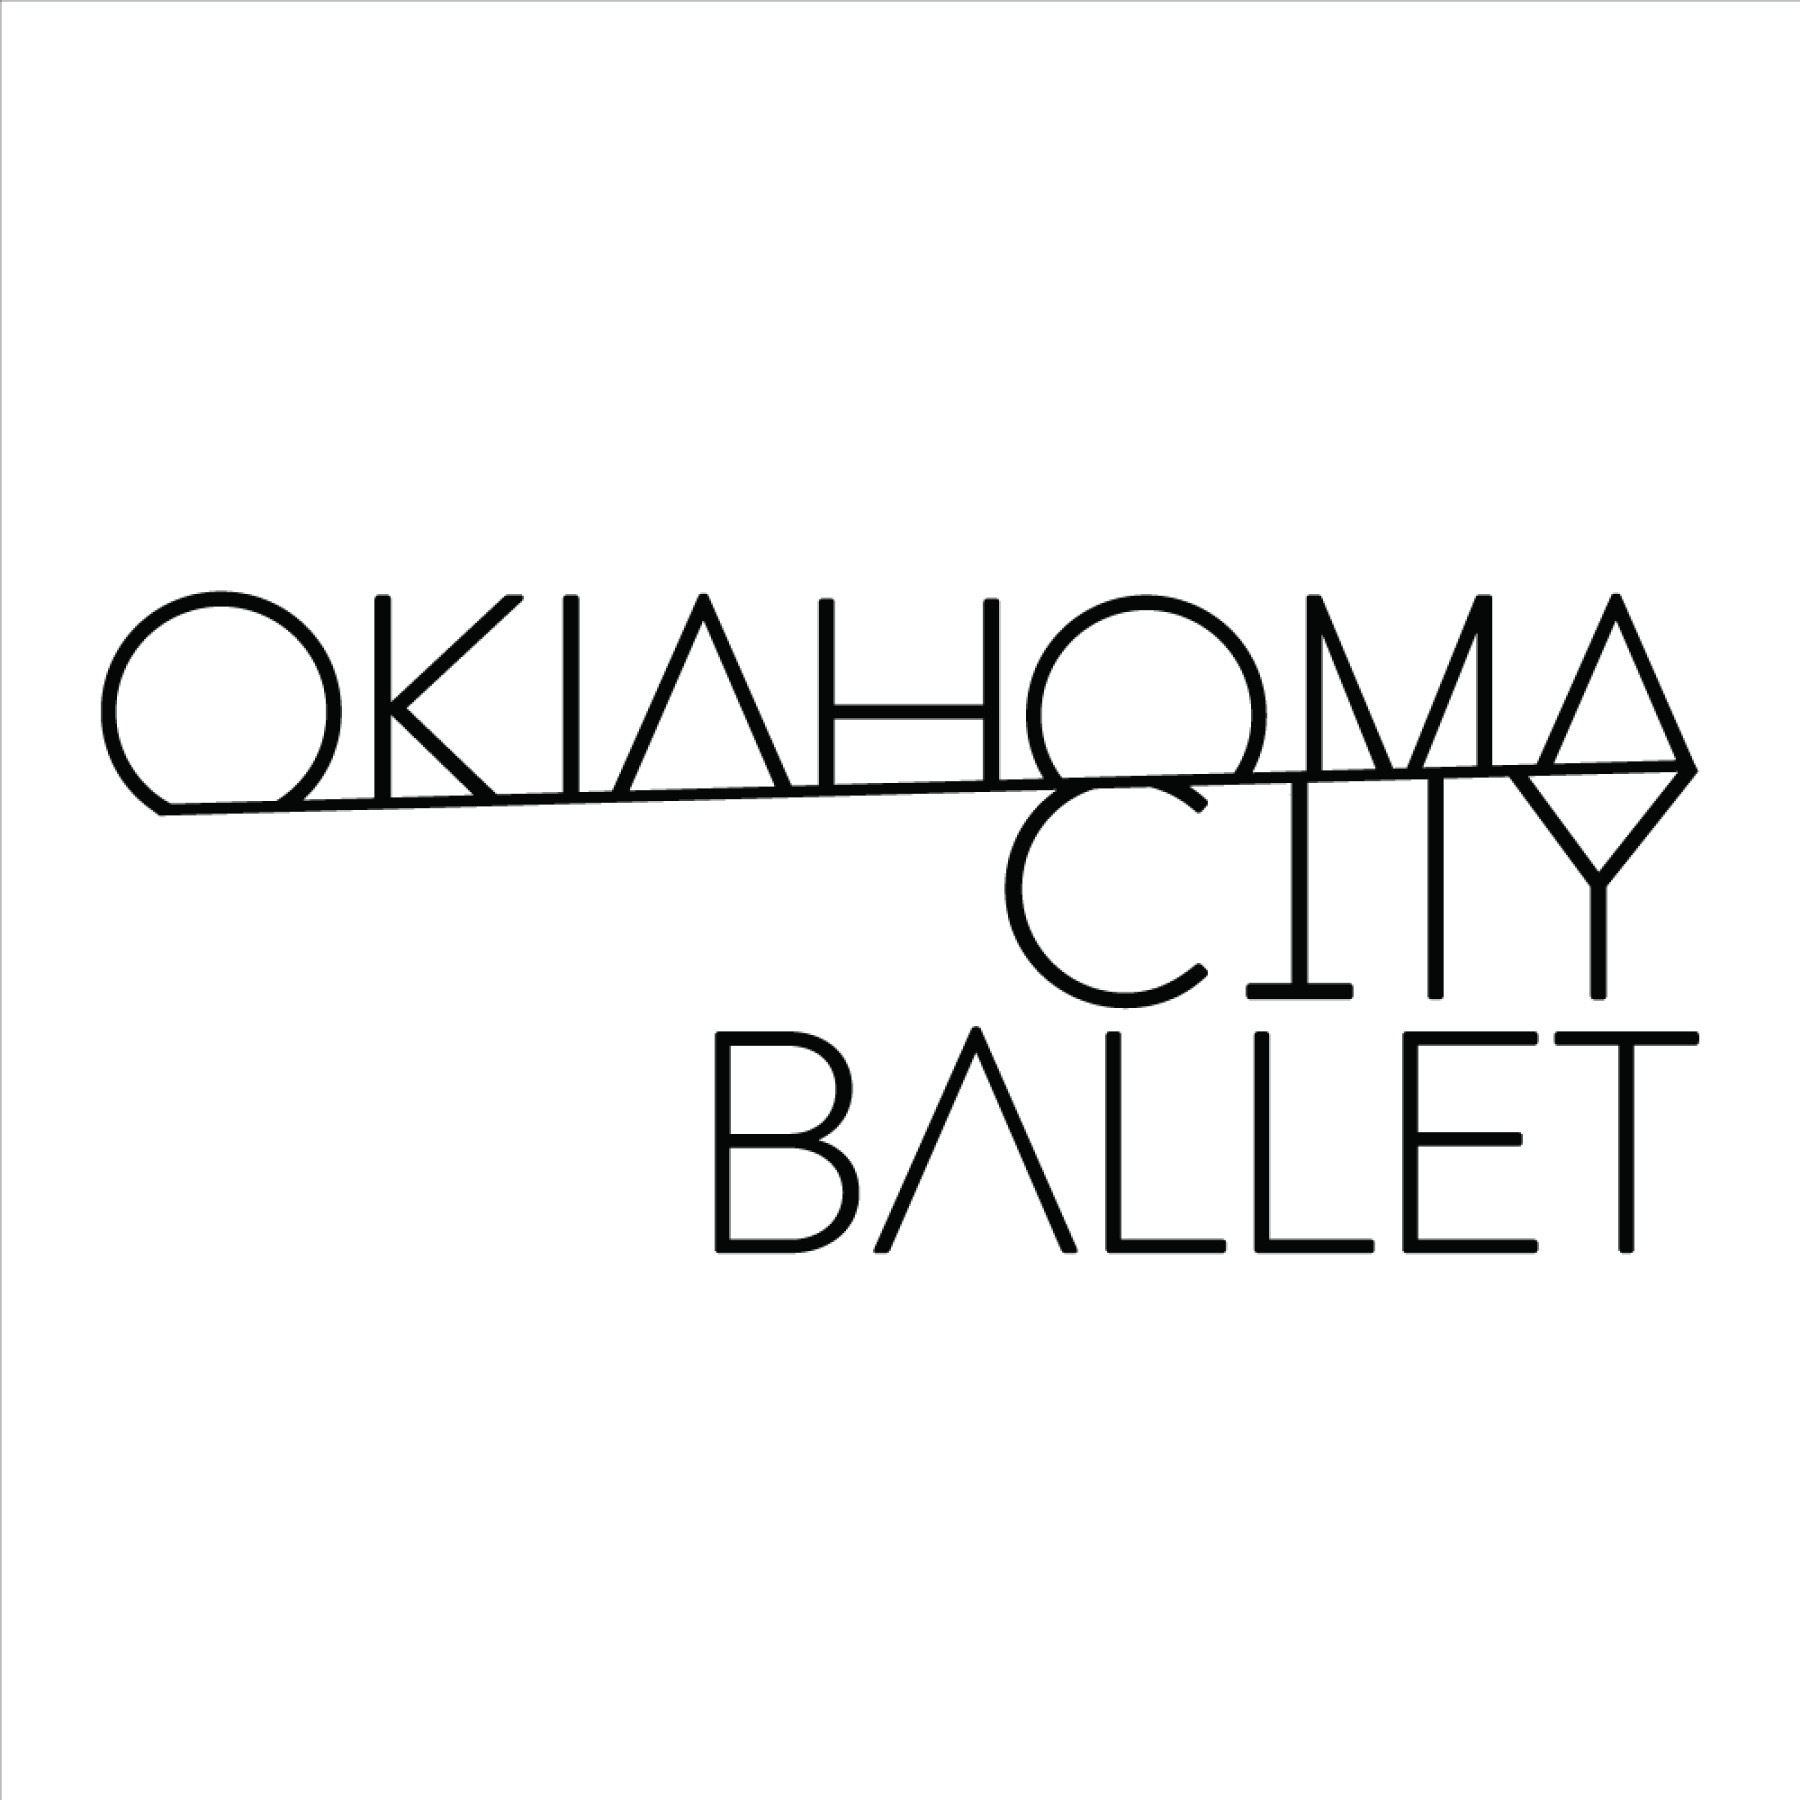 Oklahoma City Ballet: Cinderella at Thelma Gaylord Performing Arts Theatre